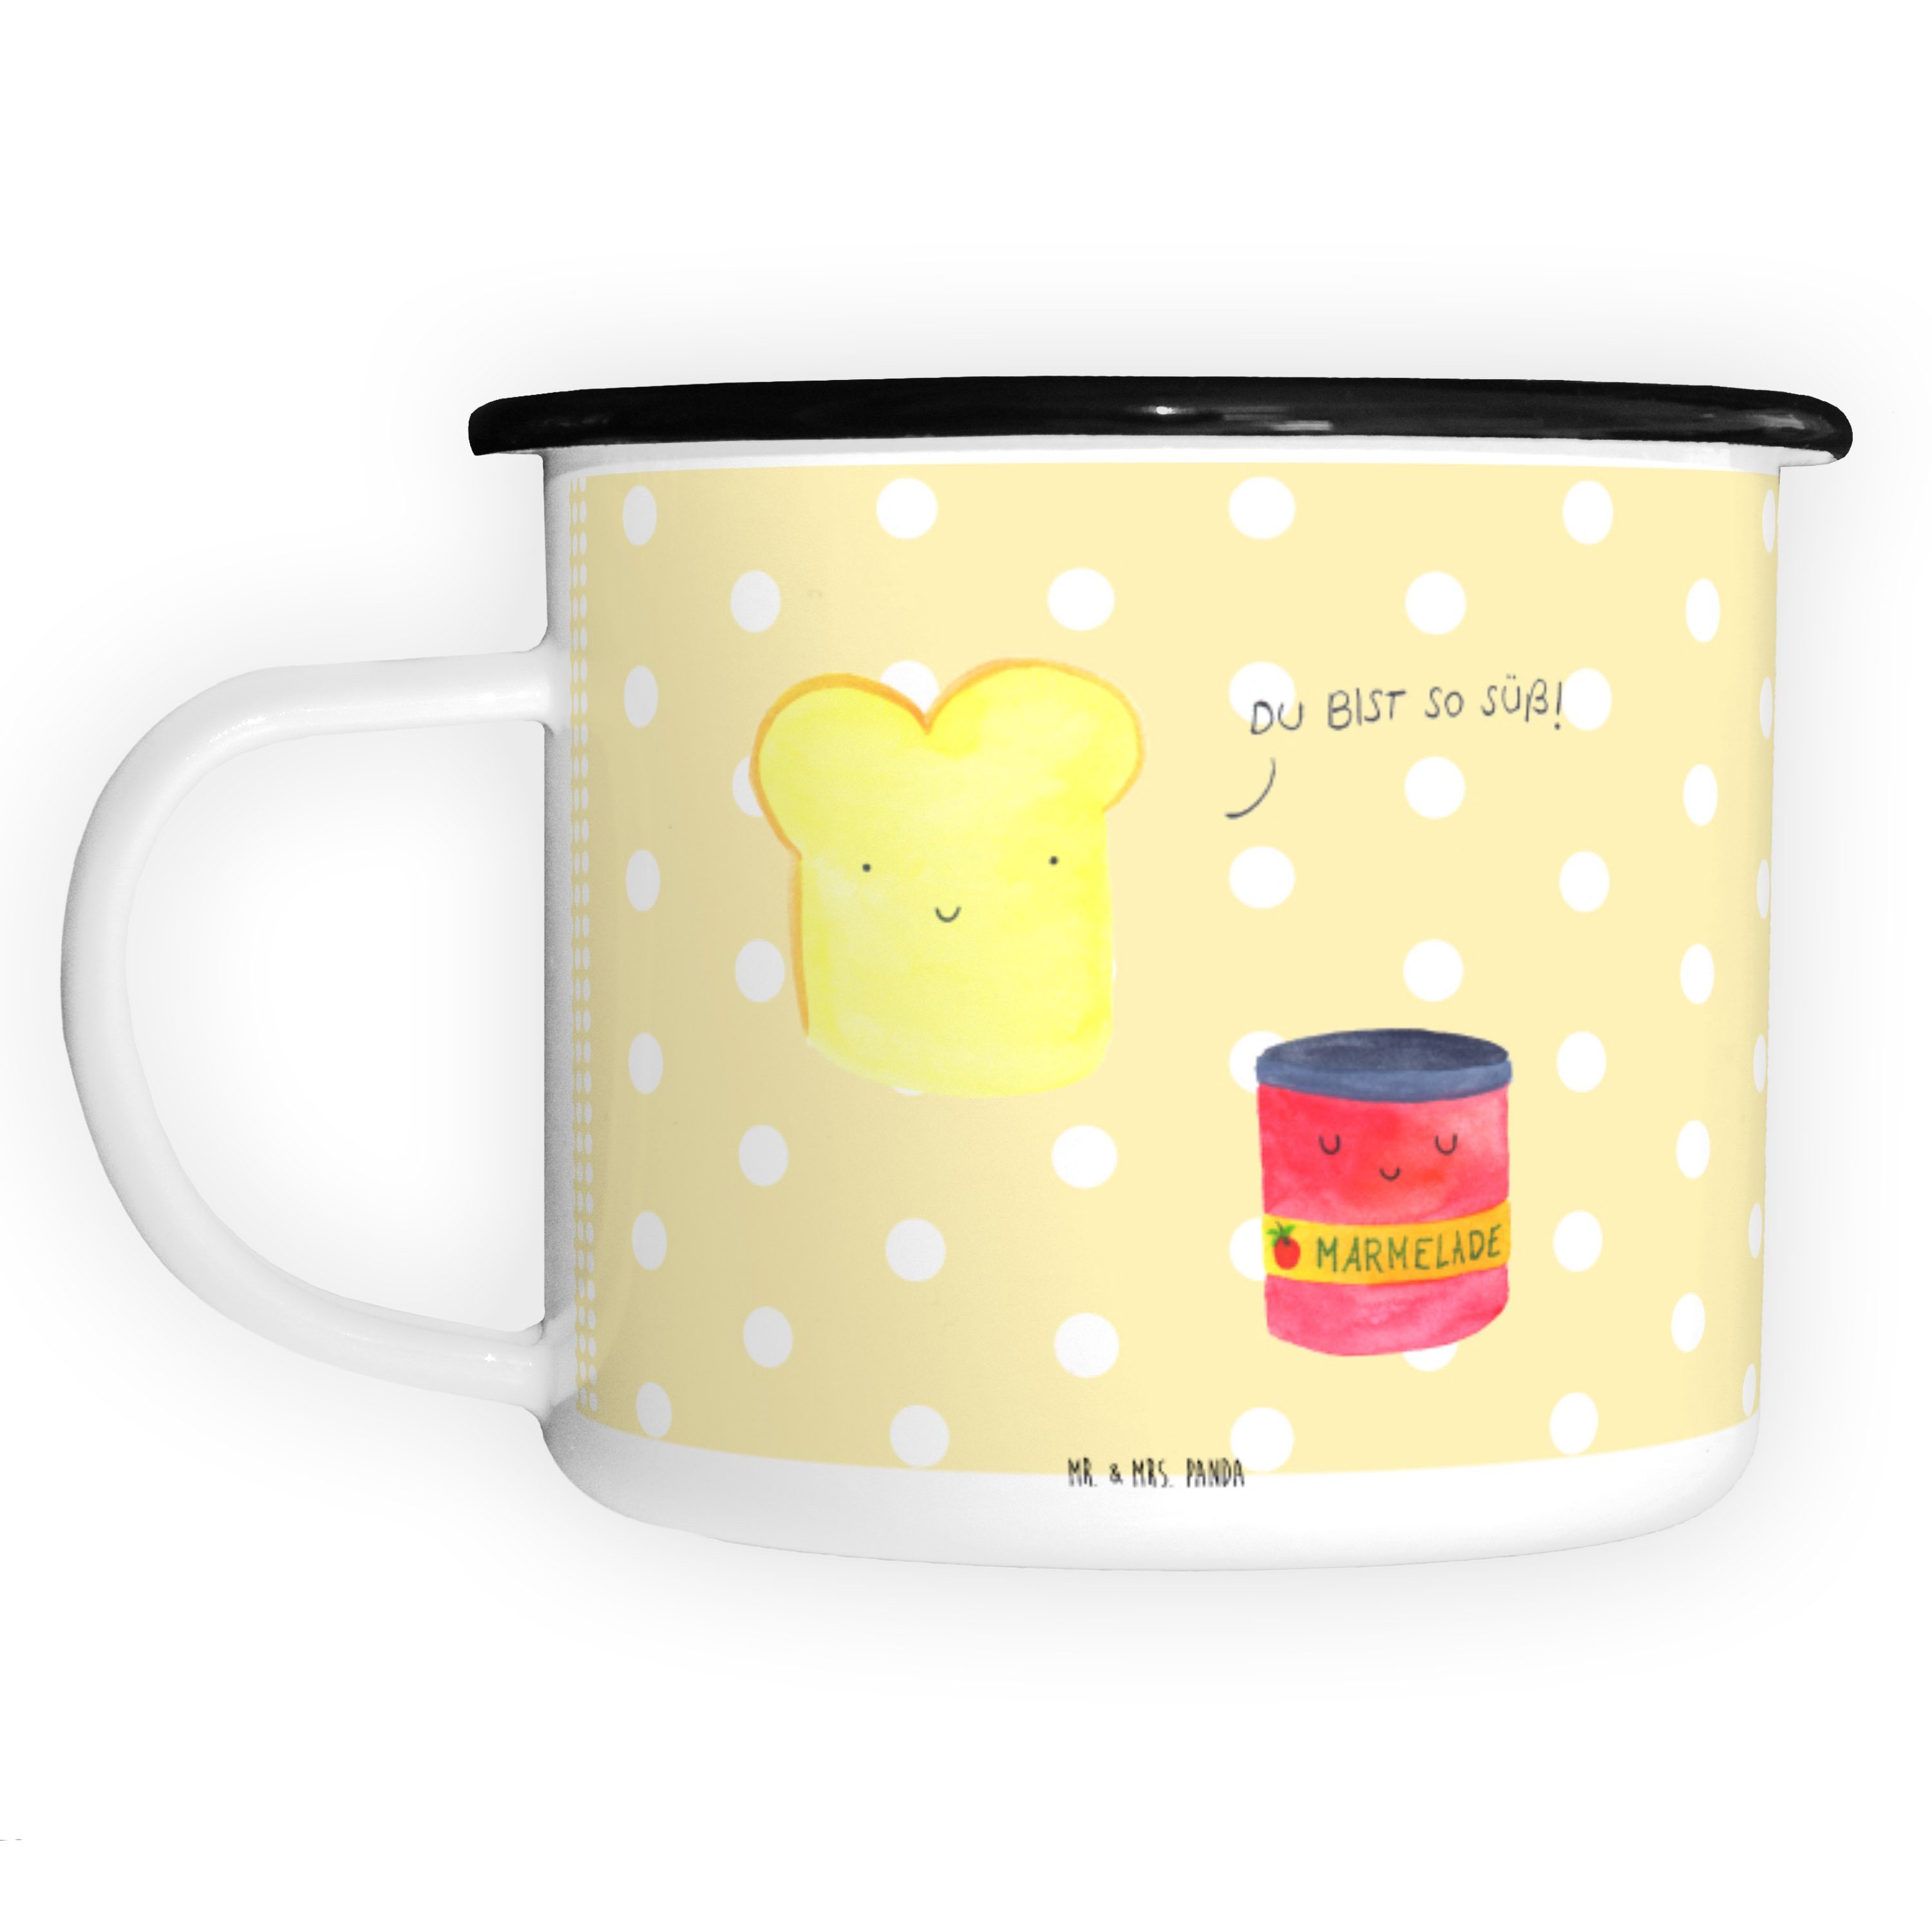 Mr. & Mrs. Panda Dekobecher Toast & Marmelade - Gelb Pastell - Geschenk, Metall-Tasse, Kaffeebech (1 St)